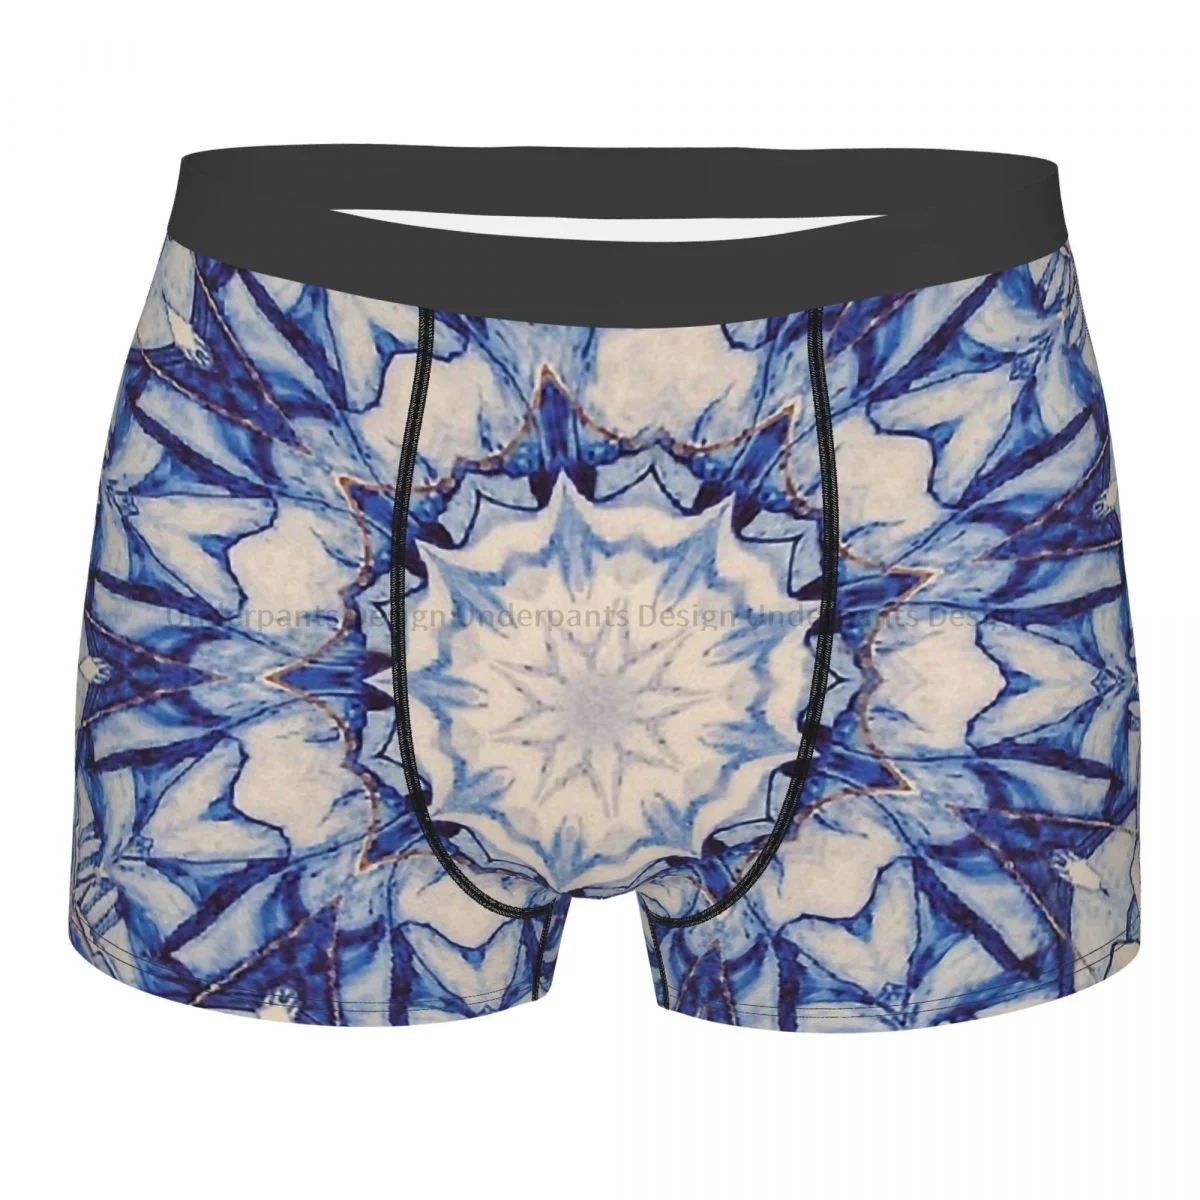 

Delft Blue Holland Design Mandala Deco Underpants Homme Panties Men's Underwear Sexy Shorts Boxer Briefs